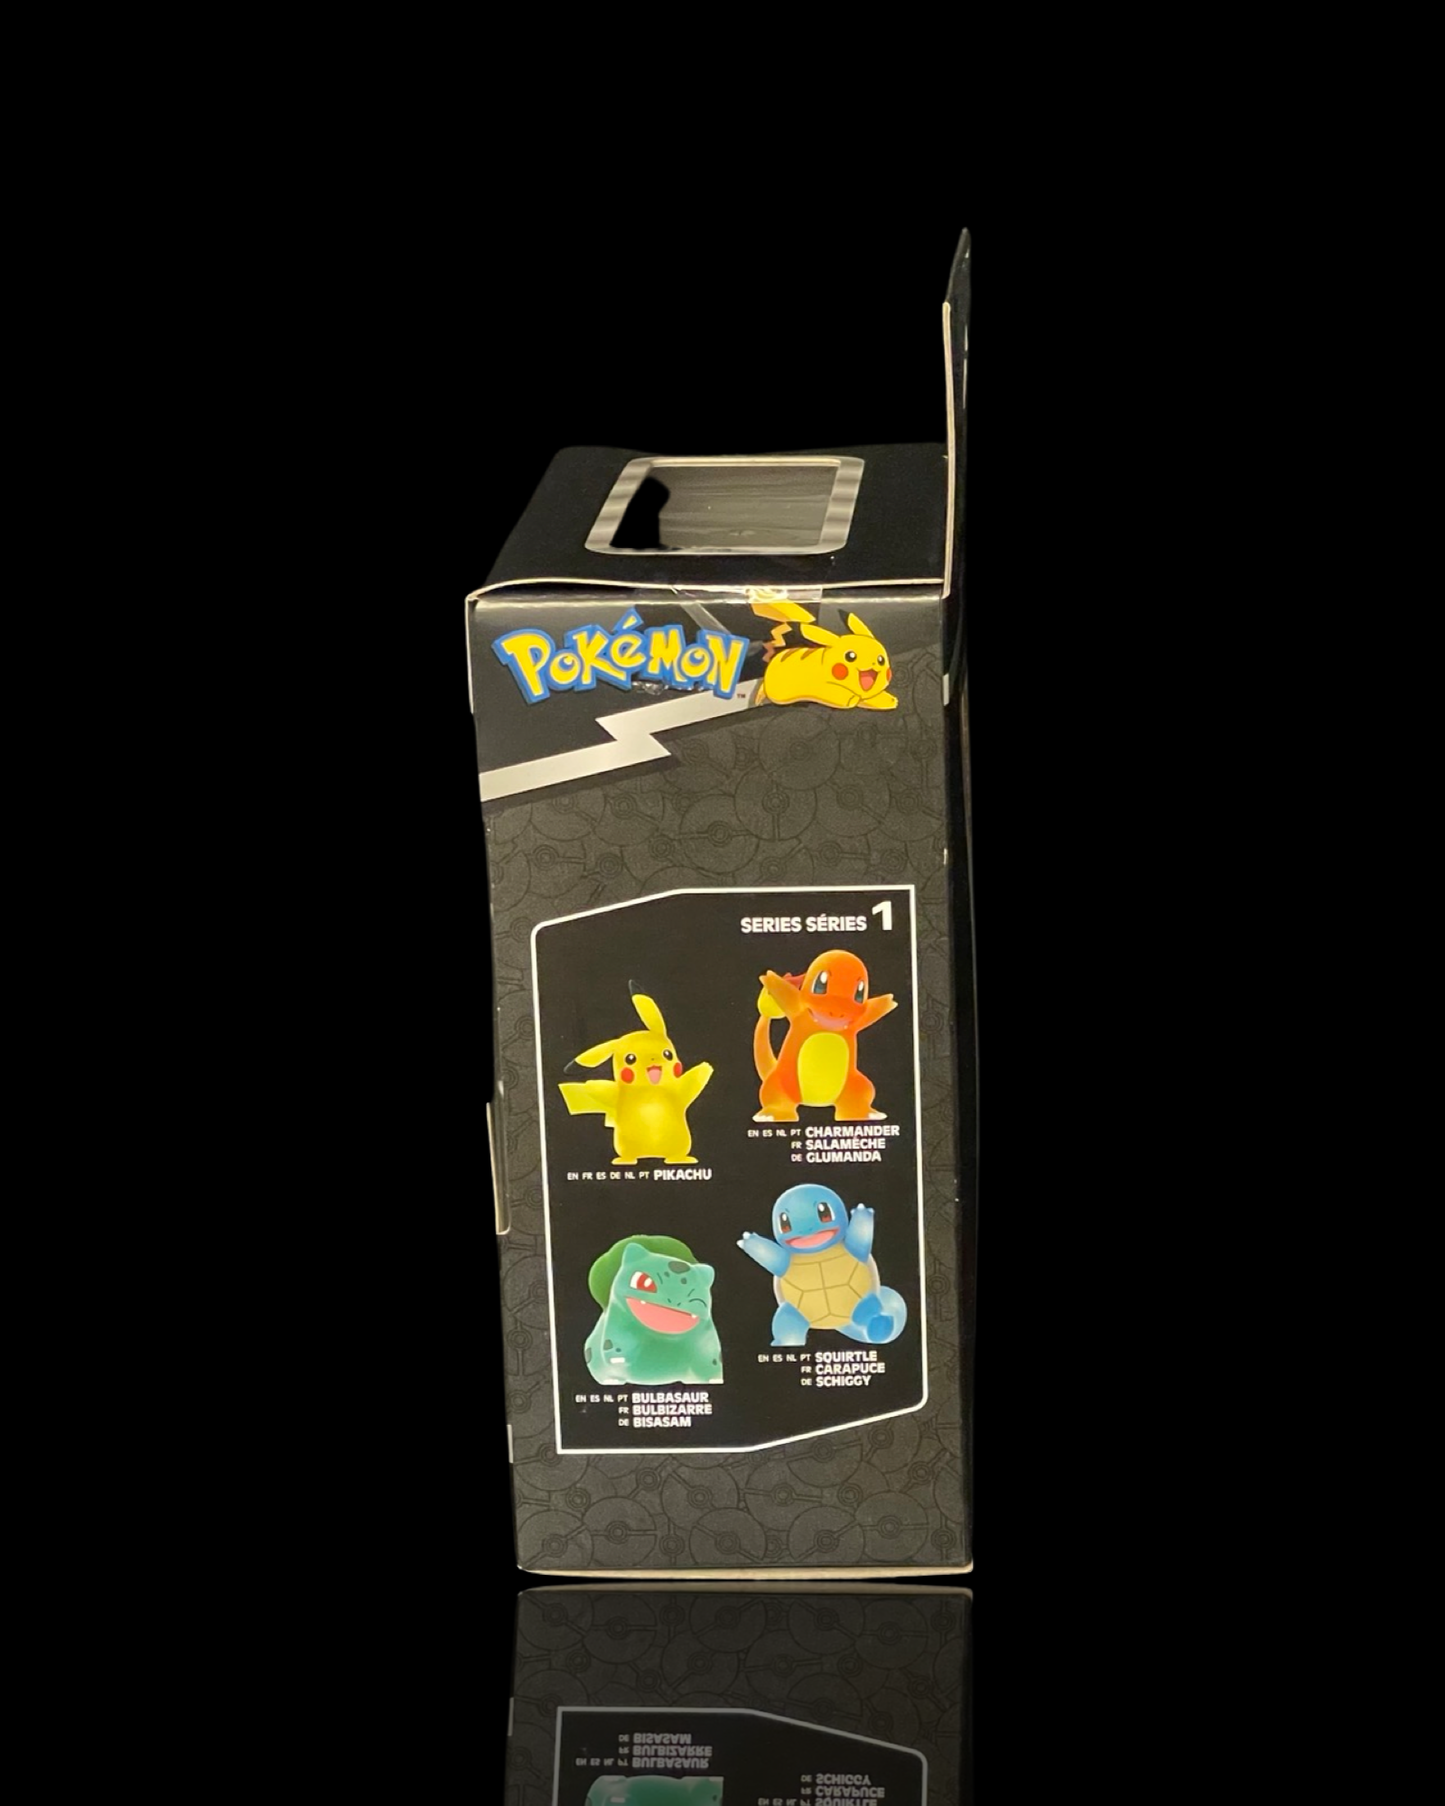 Pikachu Select Figure (Translucent)